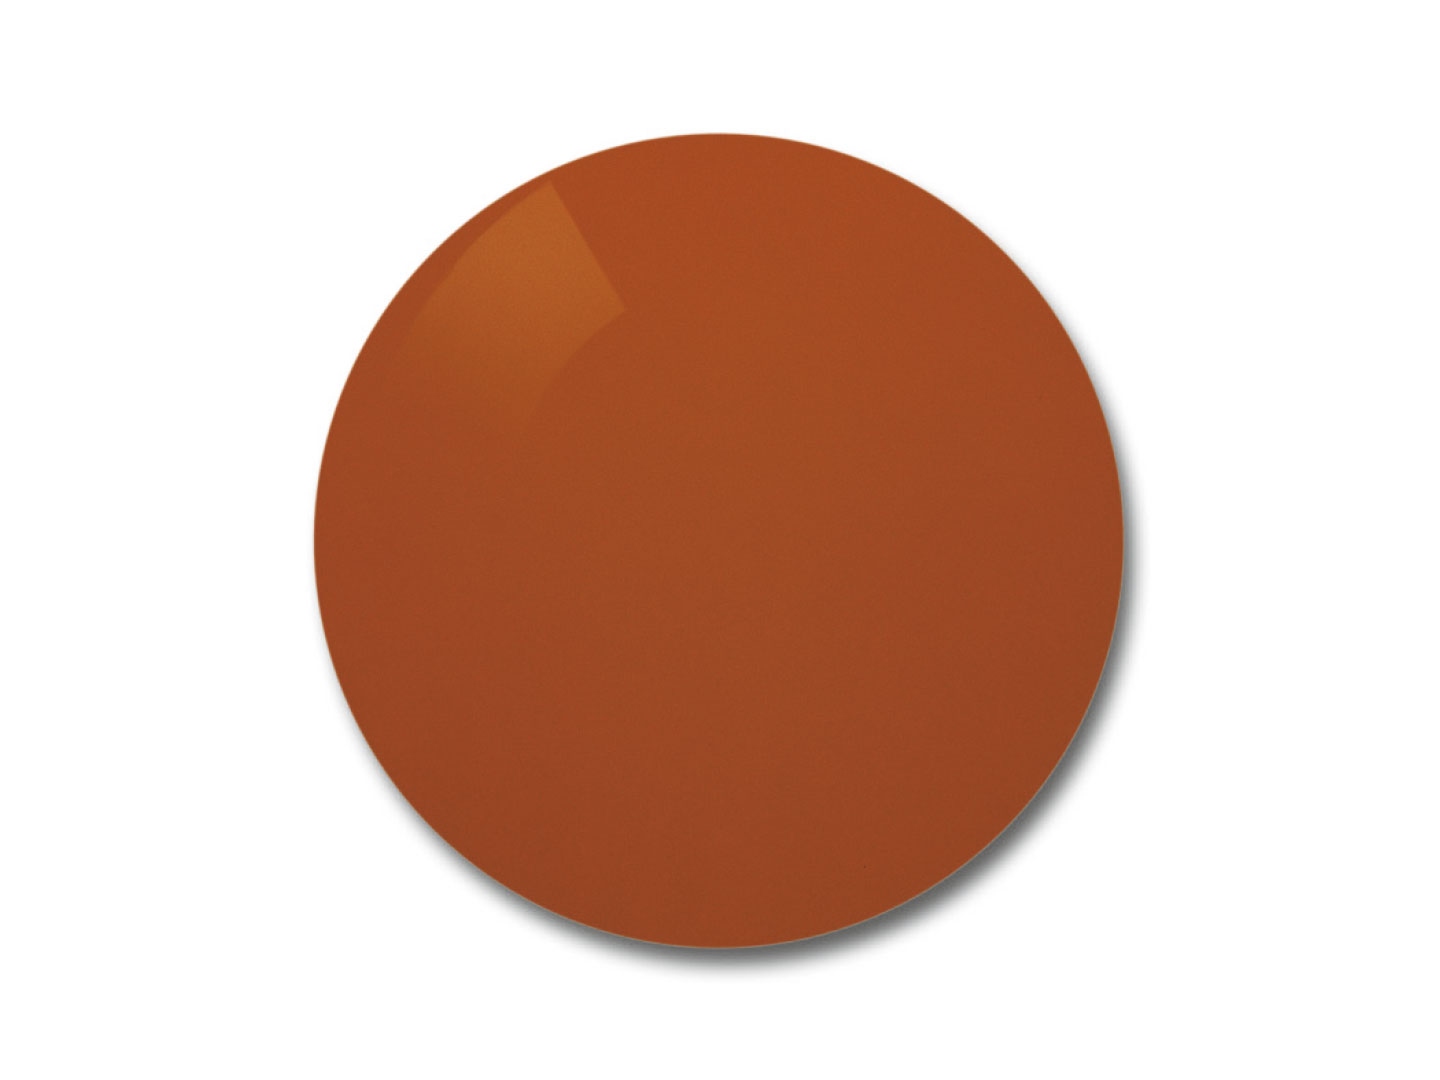 Afbeelding van ZEISS Skylet® Fun brillenglas met oranje-bruine tint